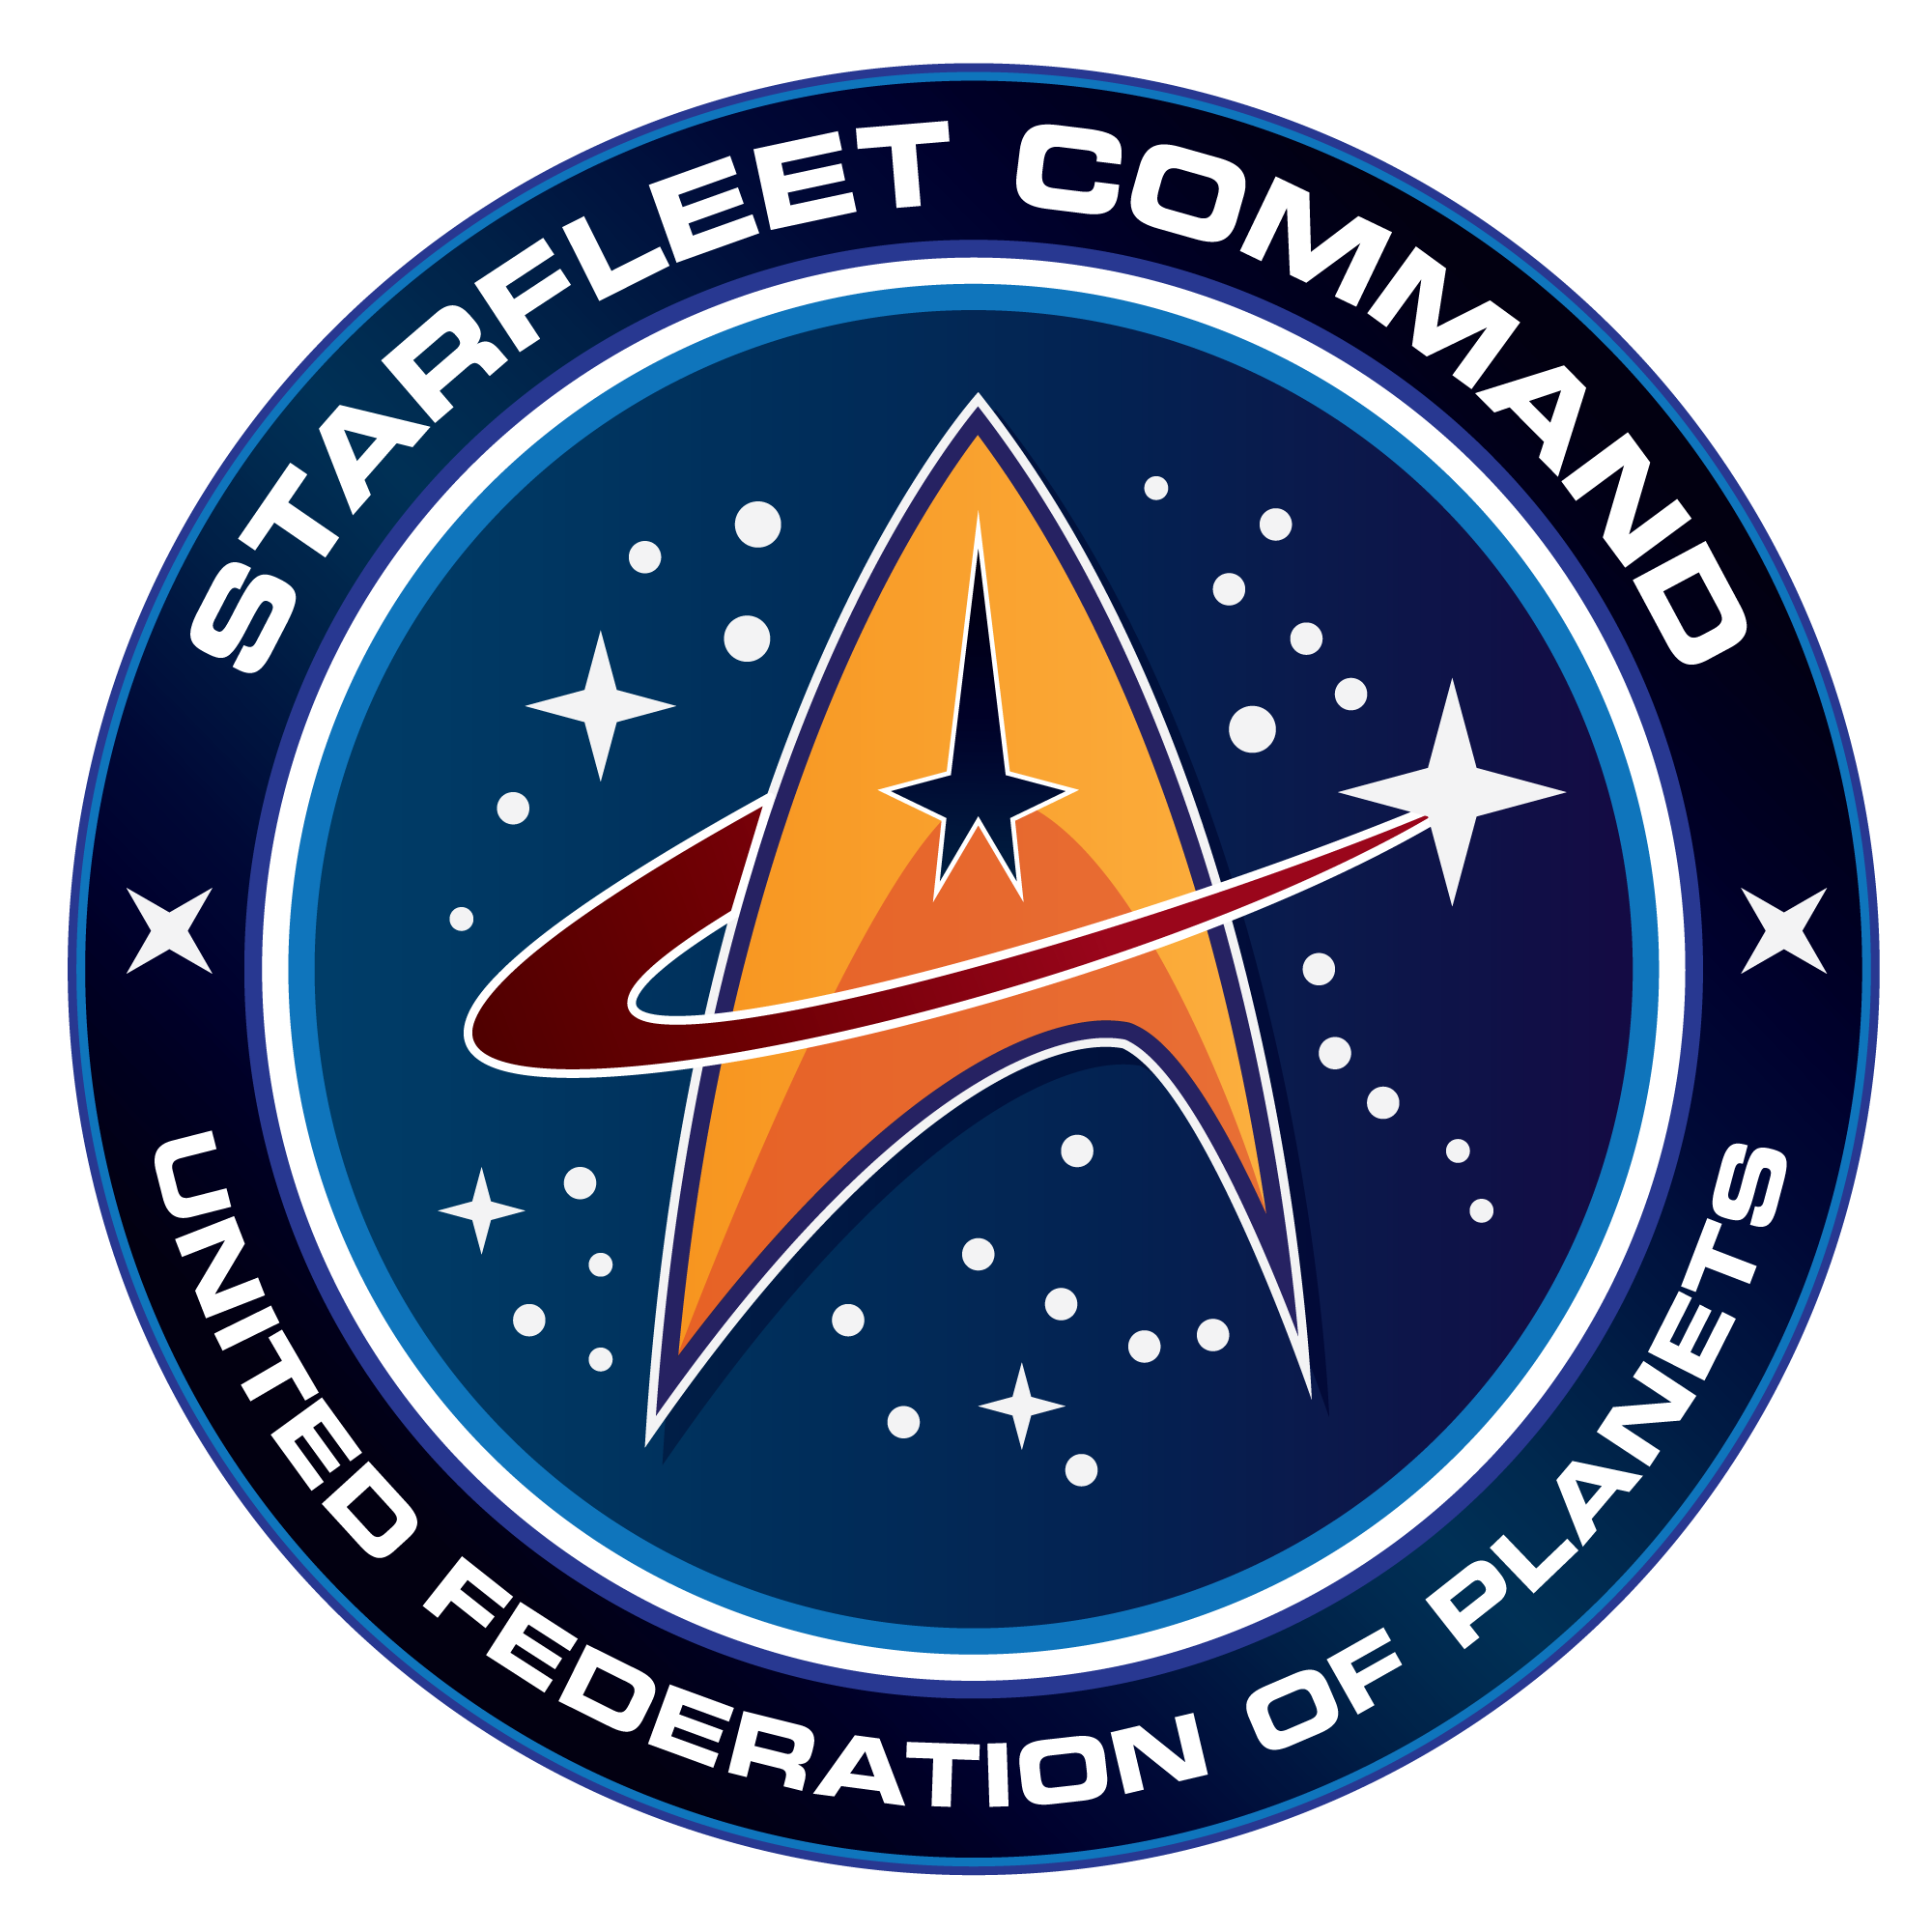 starfleet-command-22nd-mobile-daedalus-wiki-fandom-powered-by-wikia